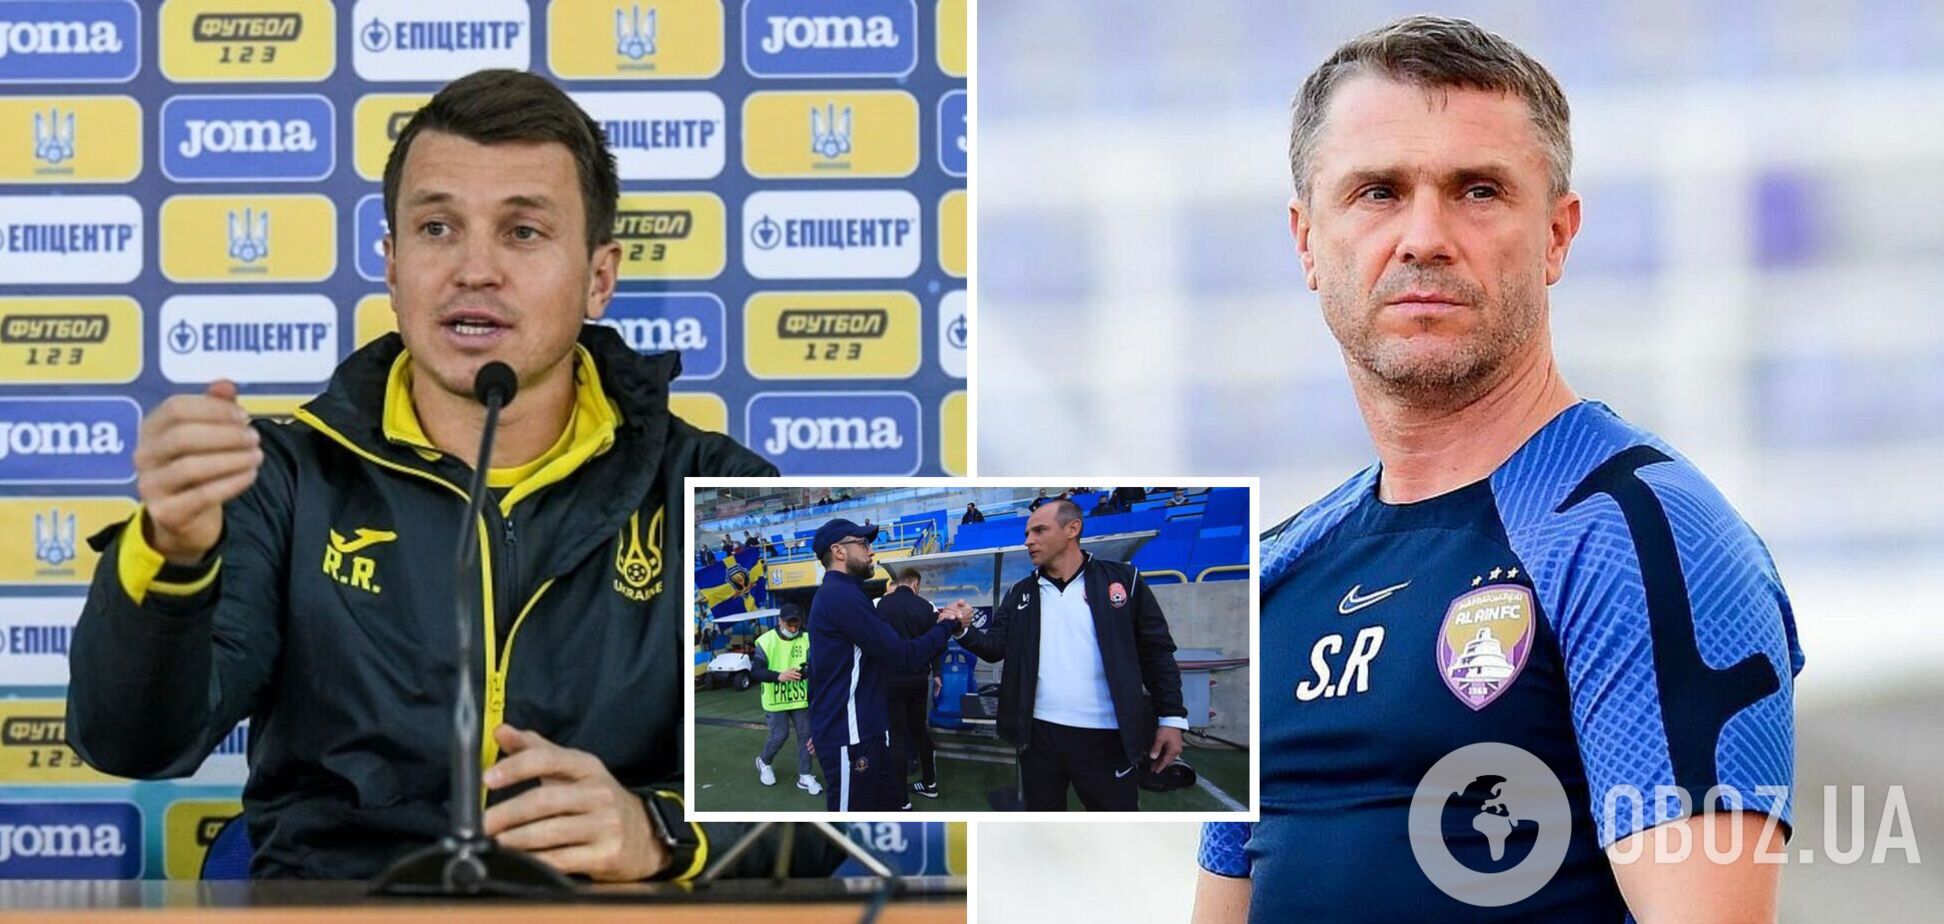 ЗМІ назвали двох тренерів, які можуть очолити збірну України замість Реброва